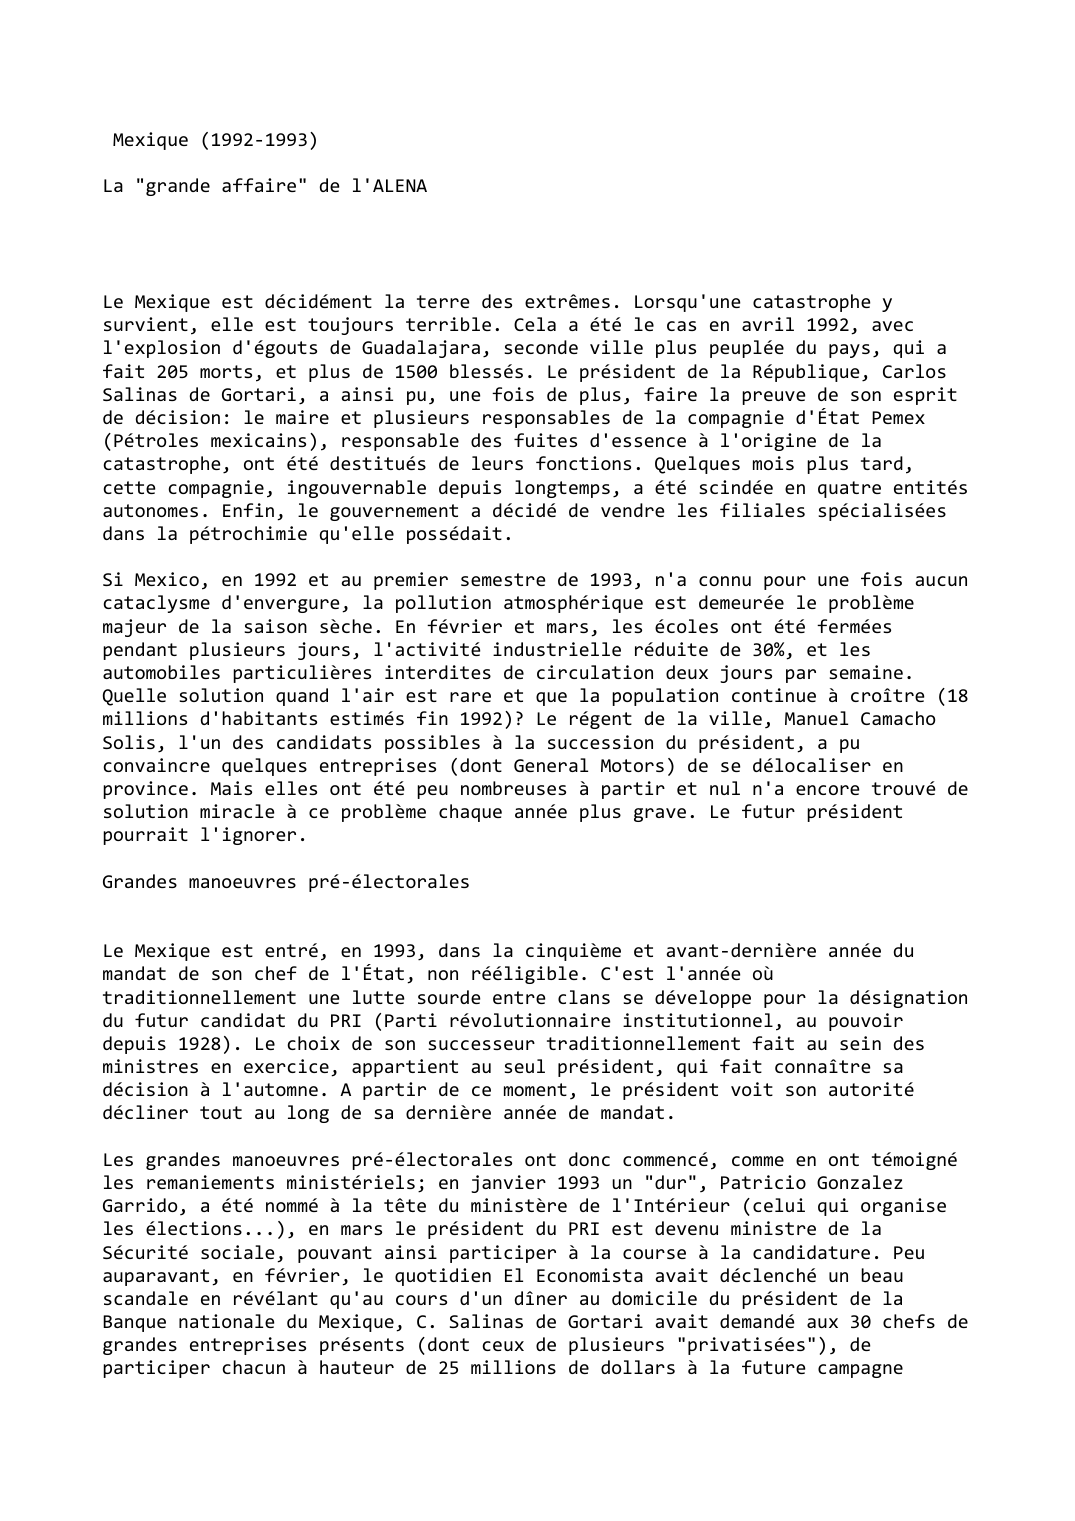 Prévisualisation du document Mexique (1992-1993)La "grande affaire" de l'ALENA